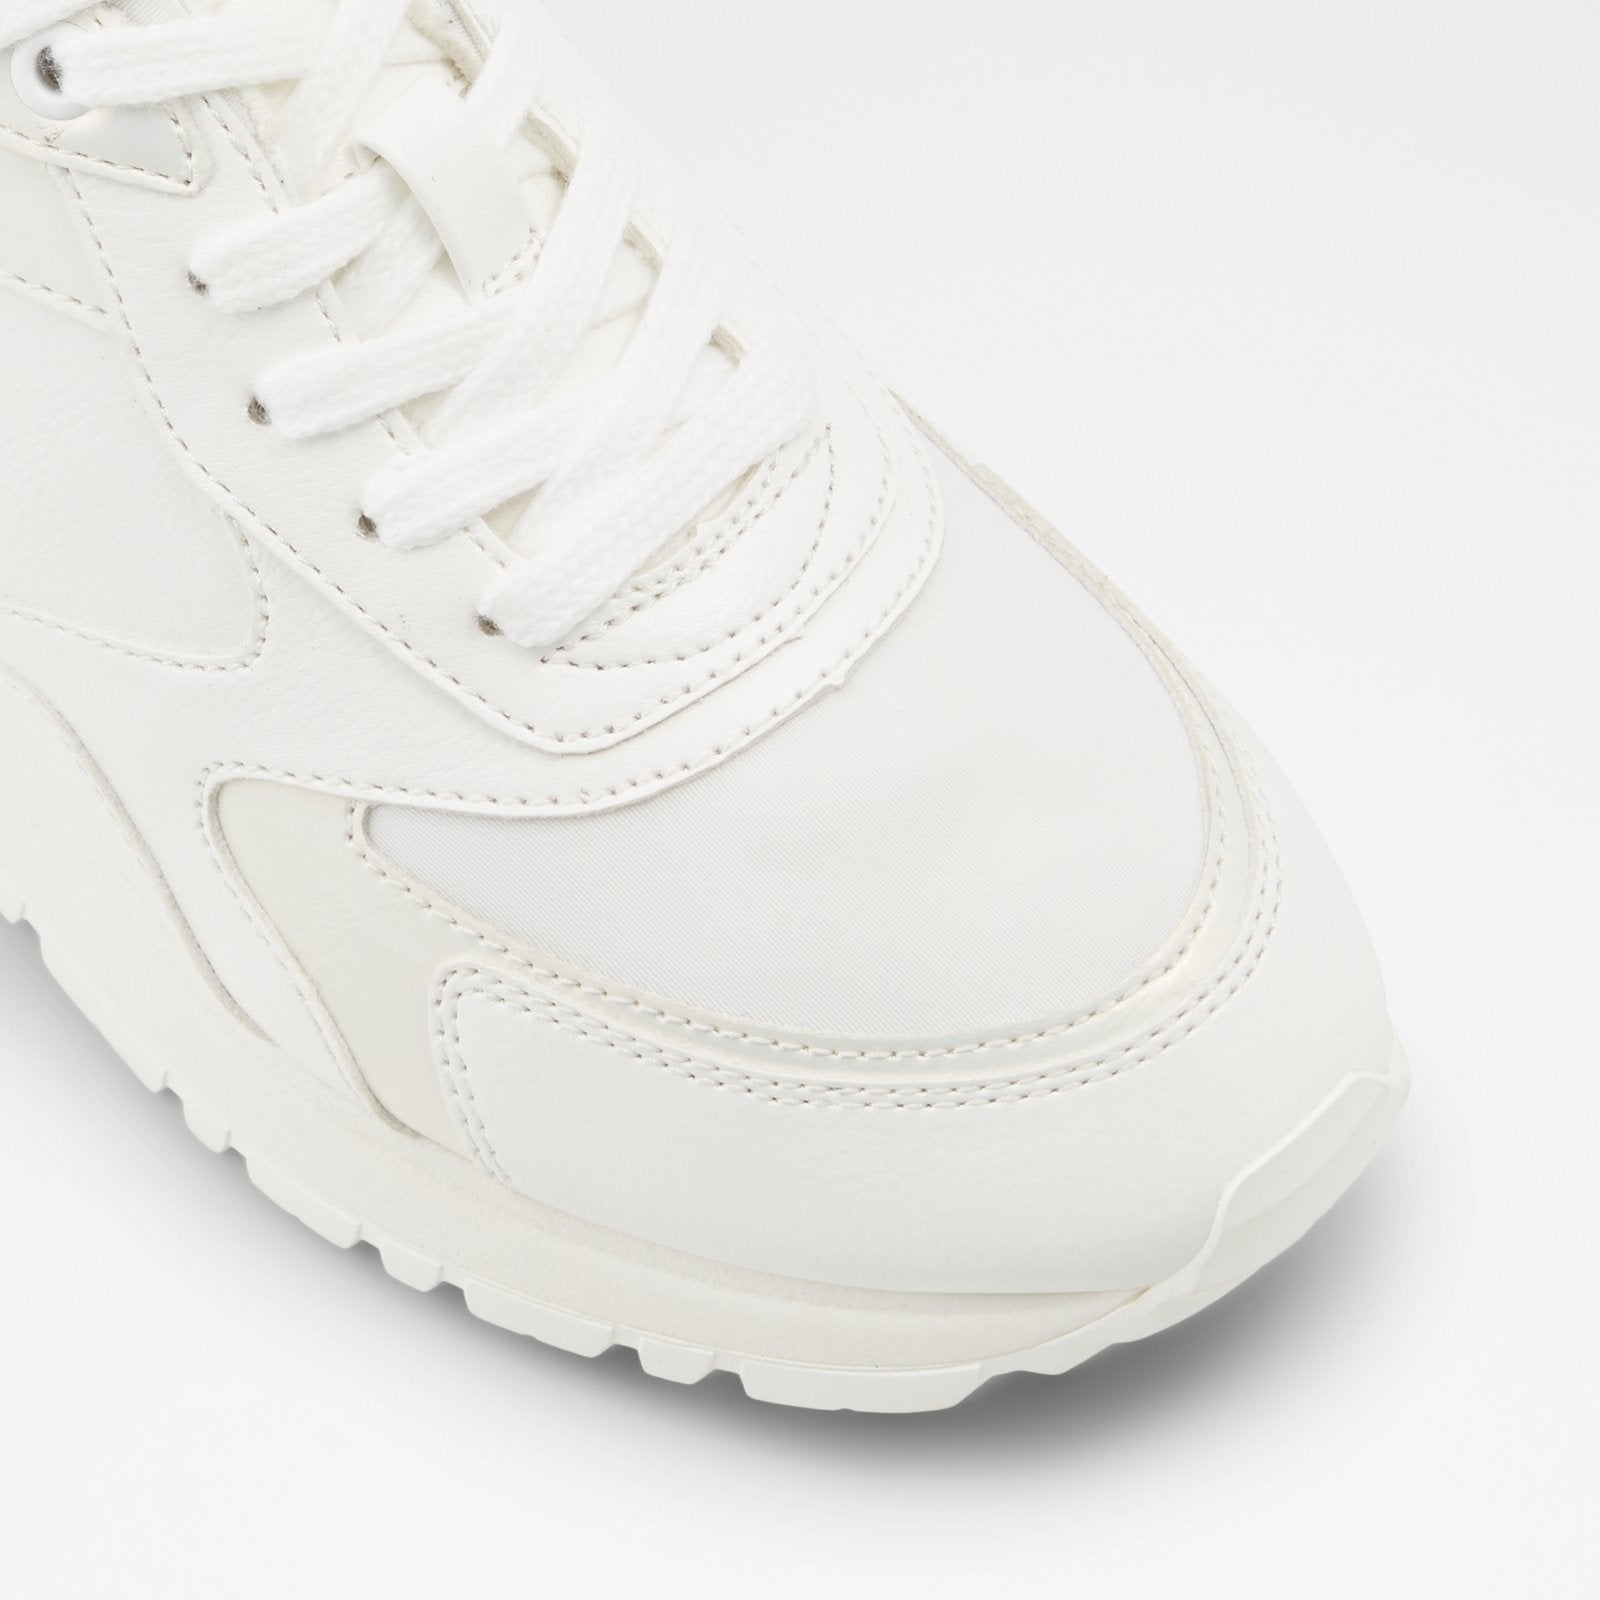 Praylian Women Shoes - White - ALDO KSA